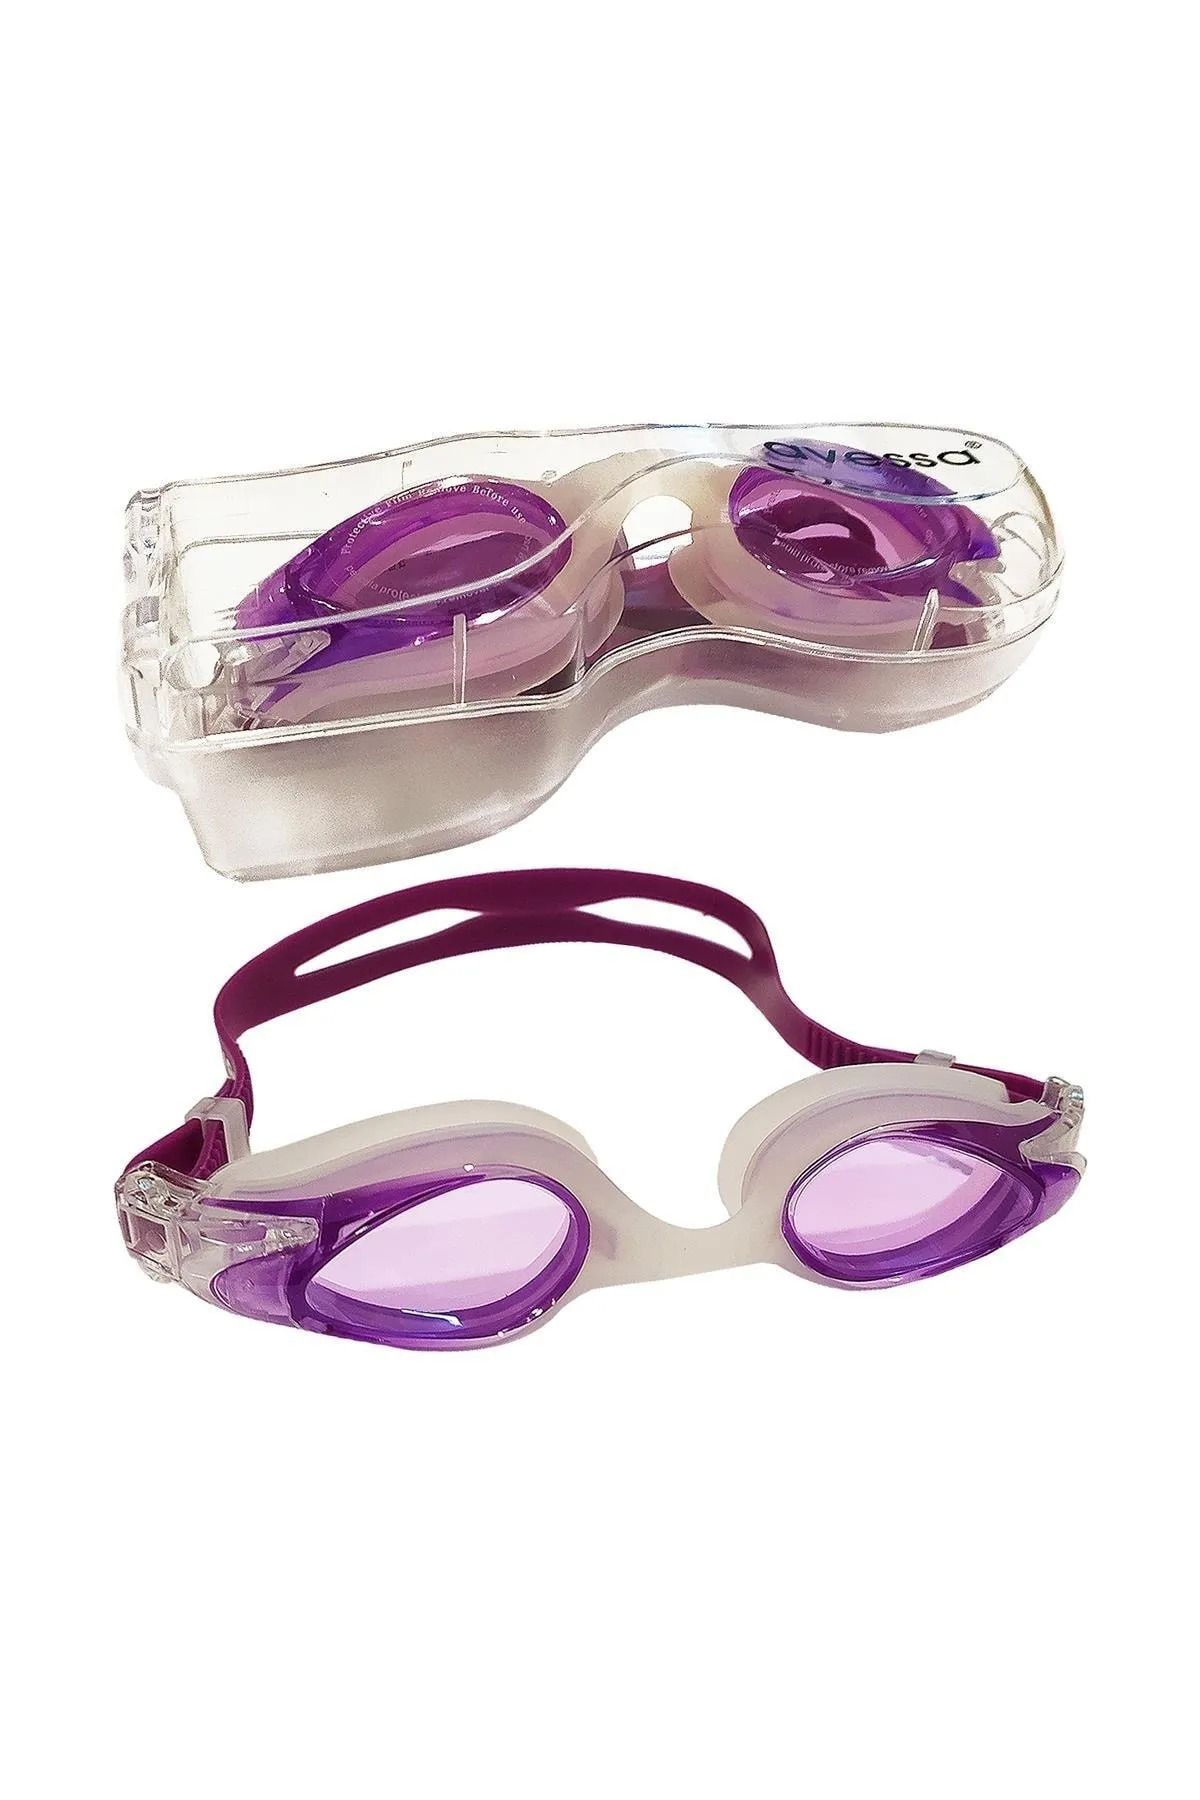 TOCSPORTS Yetişkinler İçin Kutulu Ayarlanabilir Mor Yüzücü Gözlüğü - Deniz Havuz Gözlüğü mr